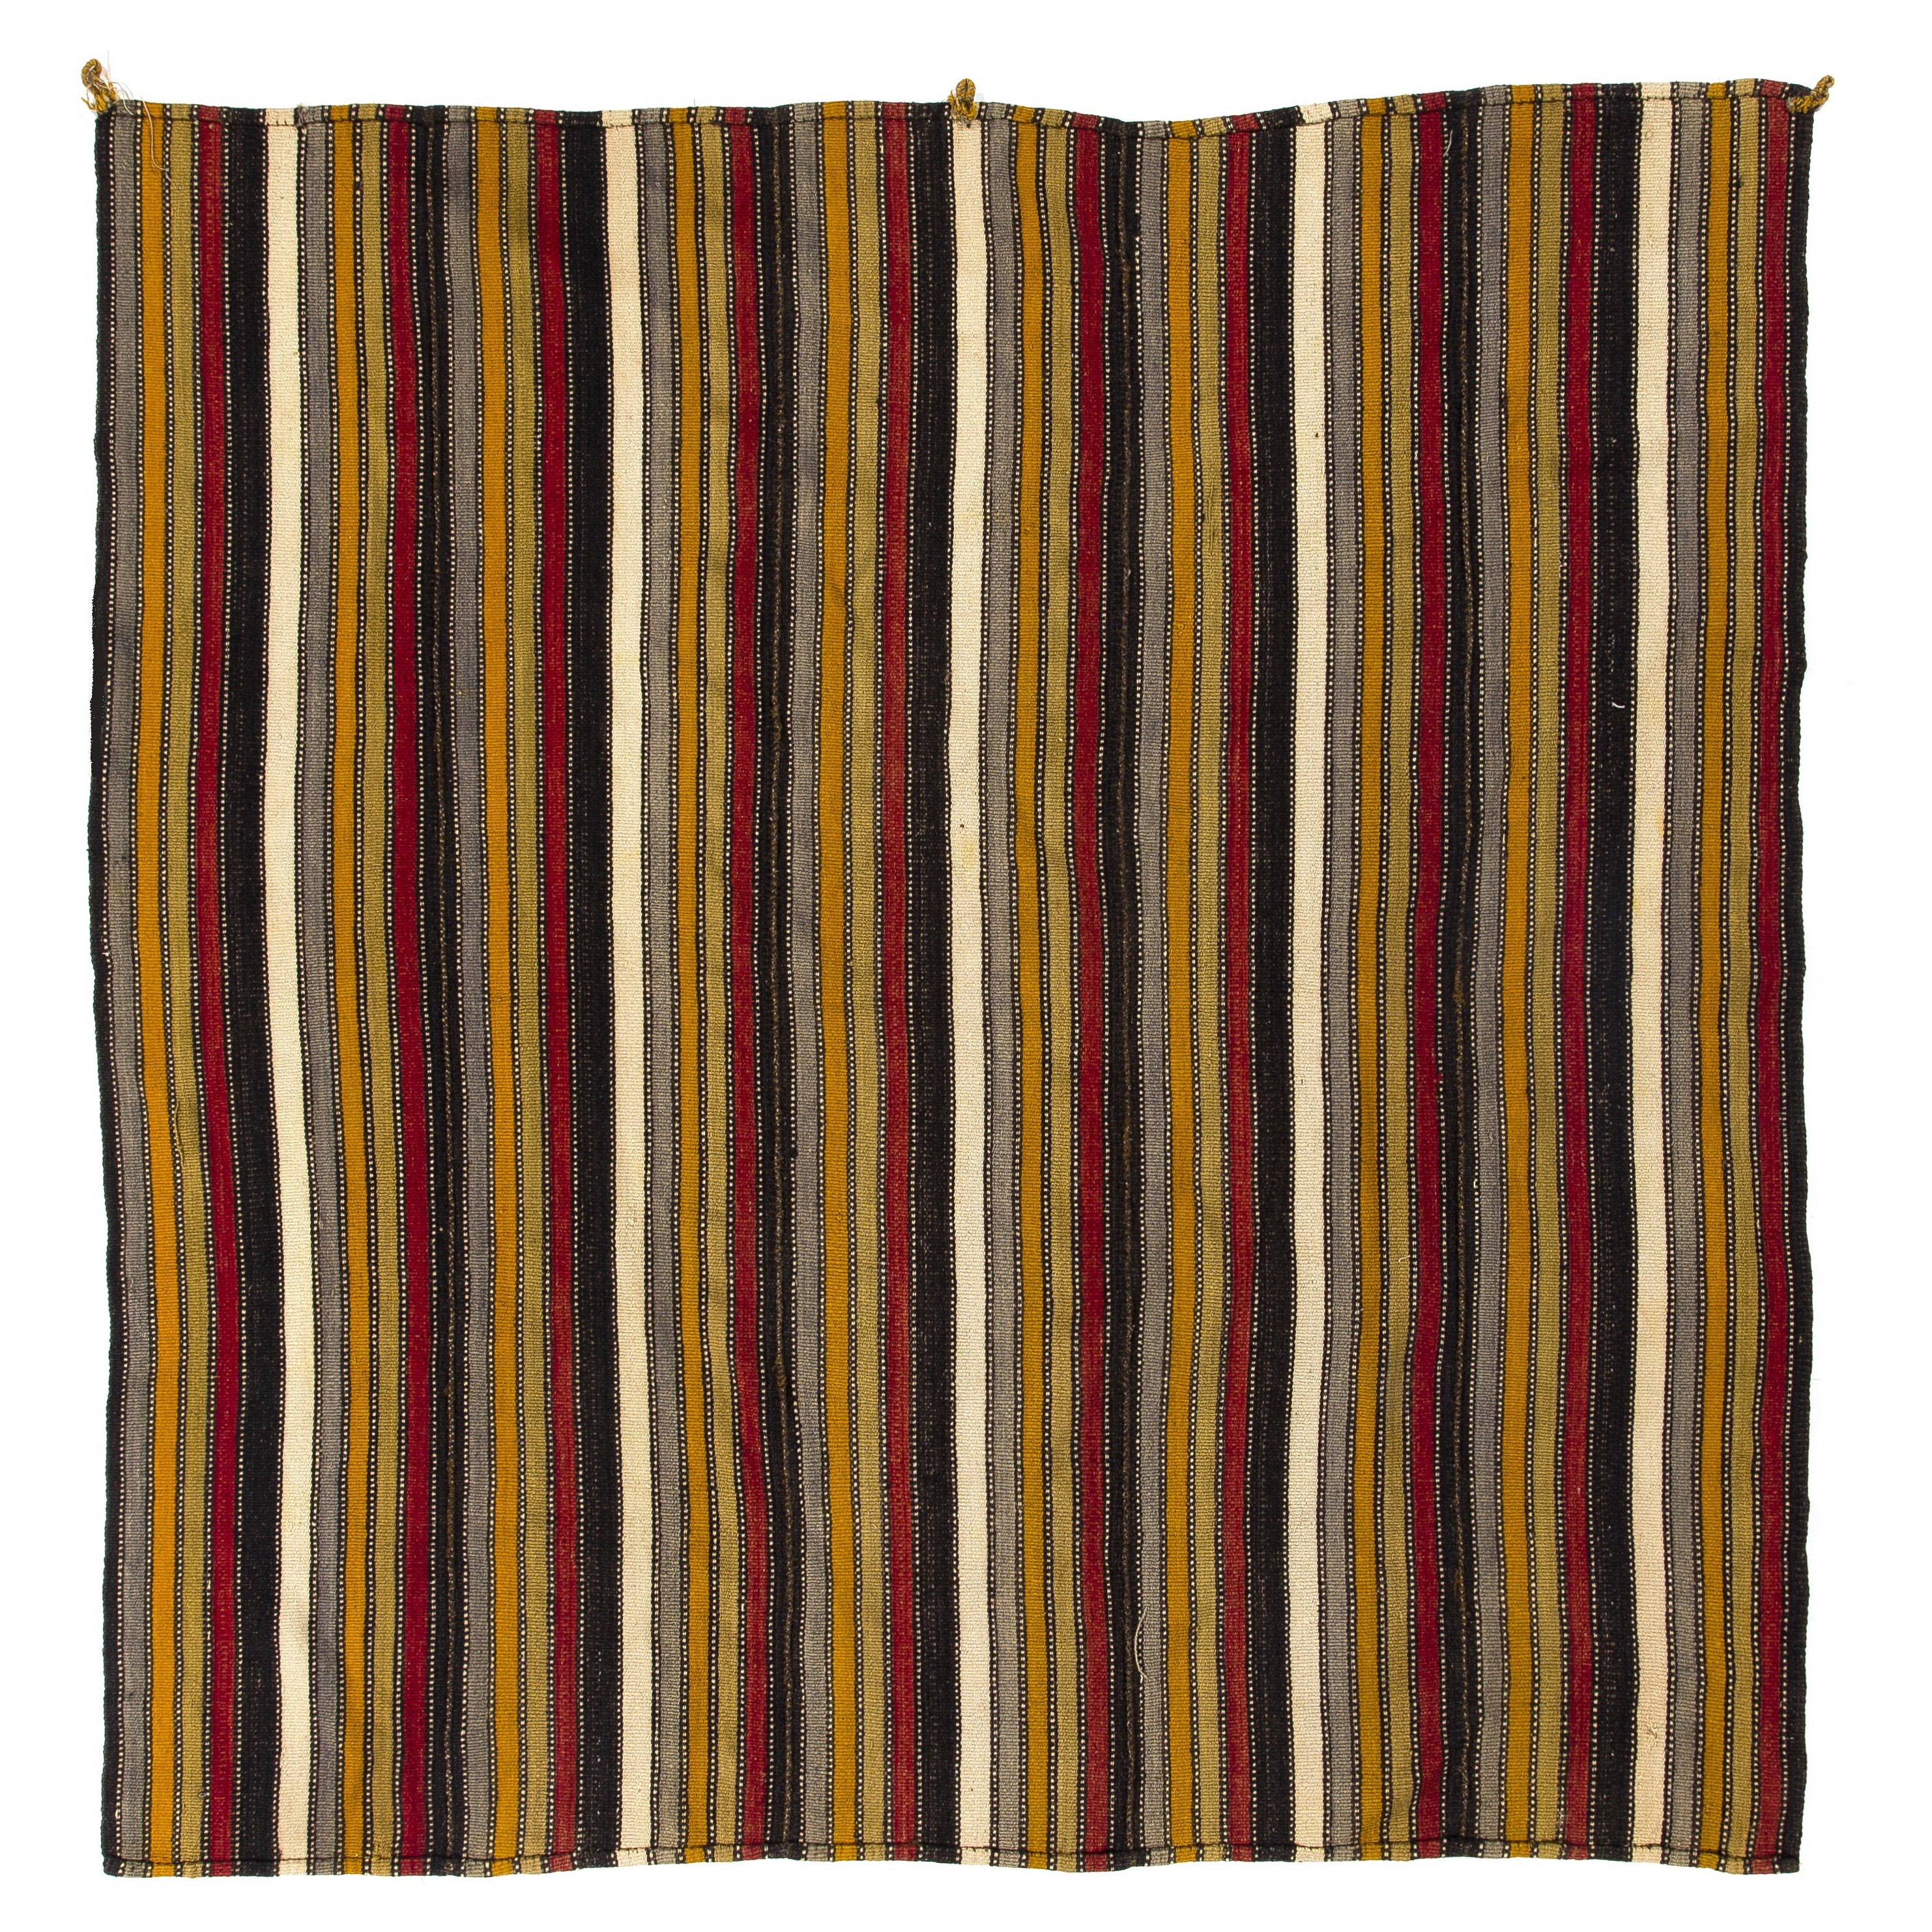 5.7x5.9 ft Tappeto Kilim Vintage a righe tessuto a mano, rivestimento per pavimenti in lana a trama piatta